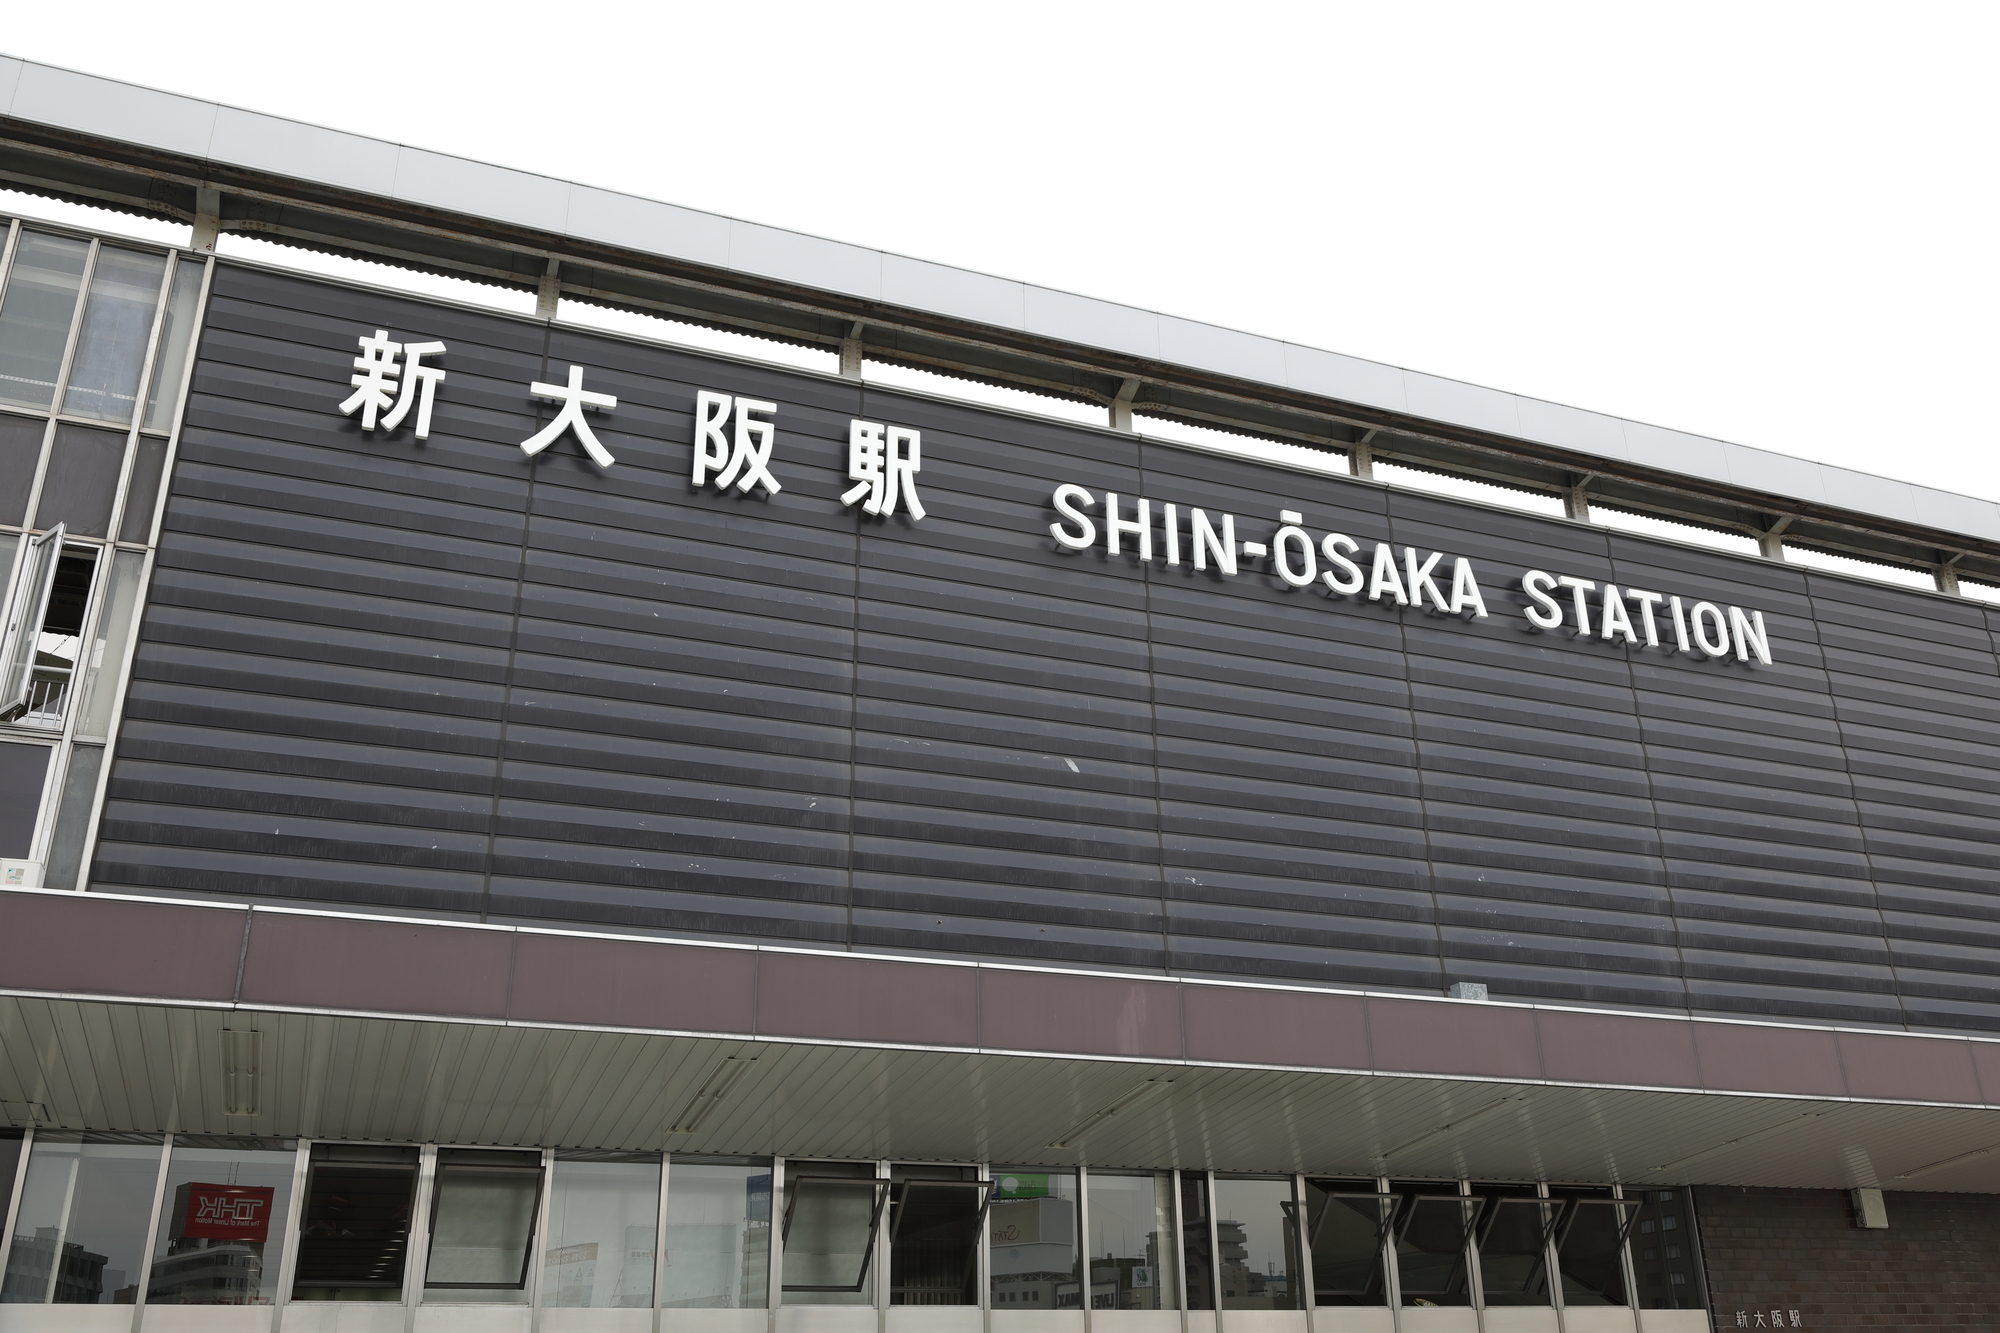 新大阪駅周辺のおすすめ温泉 銭湯ランキングtop5 日帰りでの利用も可能 年版 温泉部